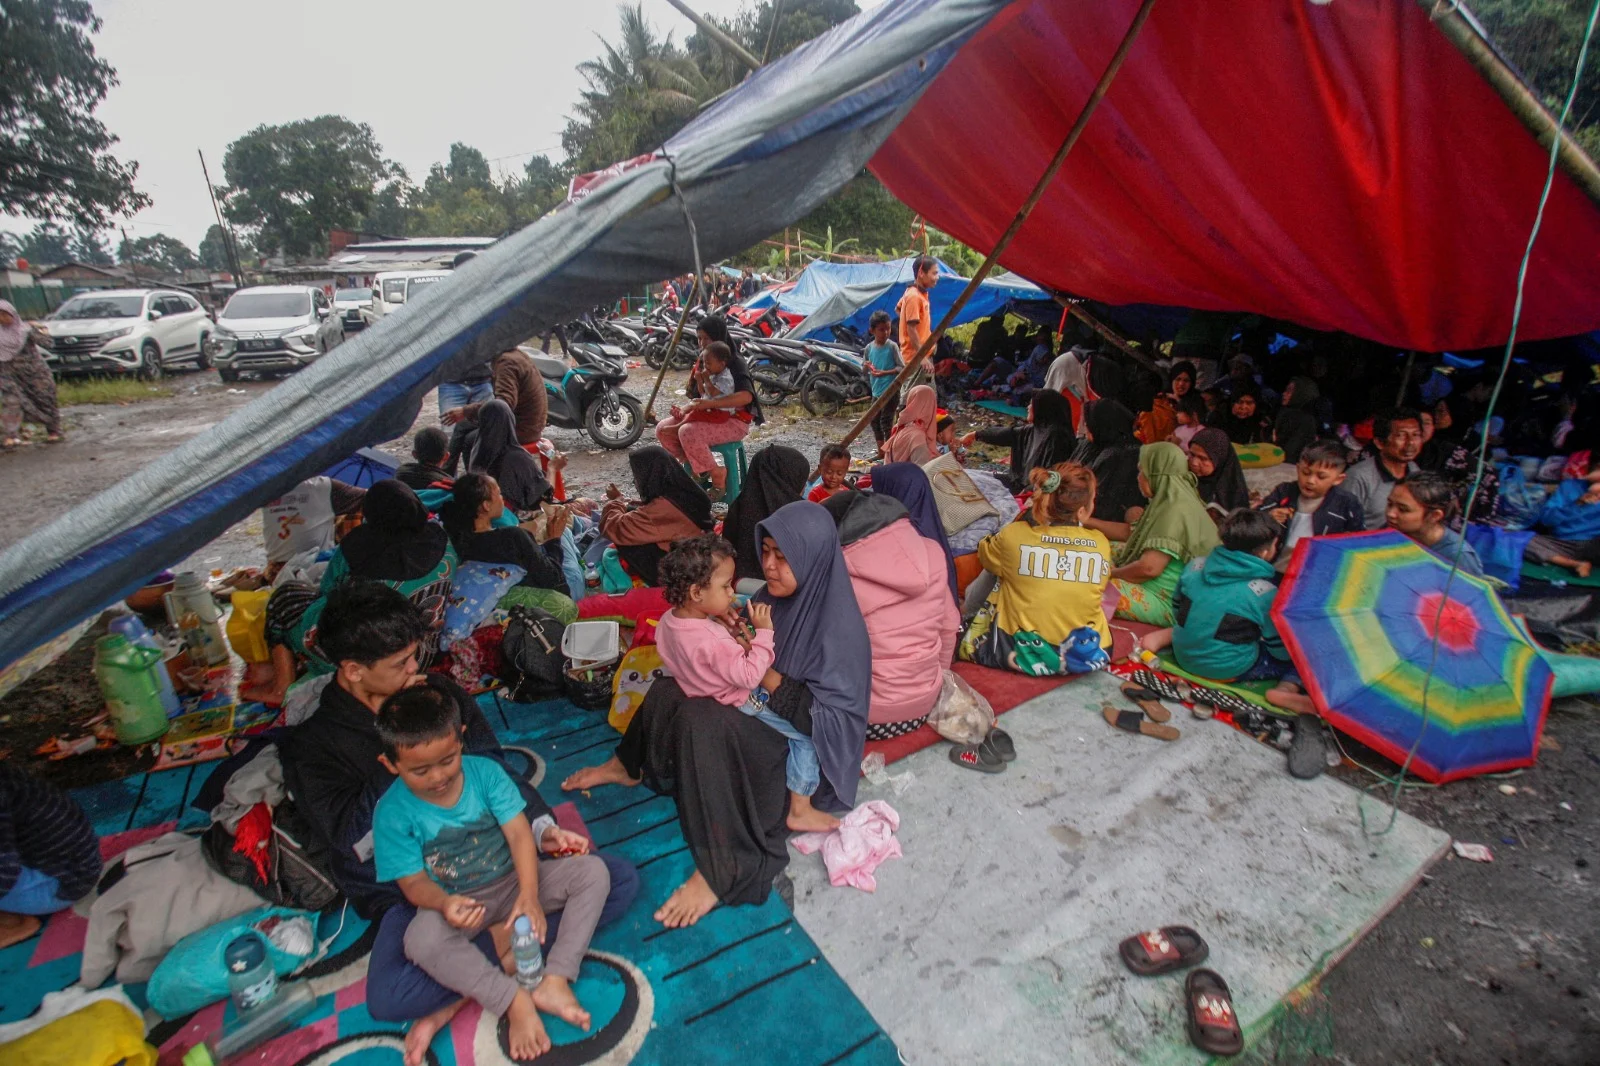 יותר מ-7,000 איבדו את בתיהם ברעידת אדמה באינדונזיה